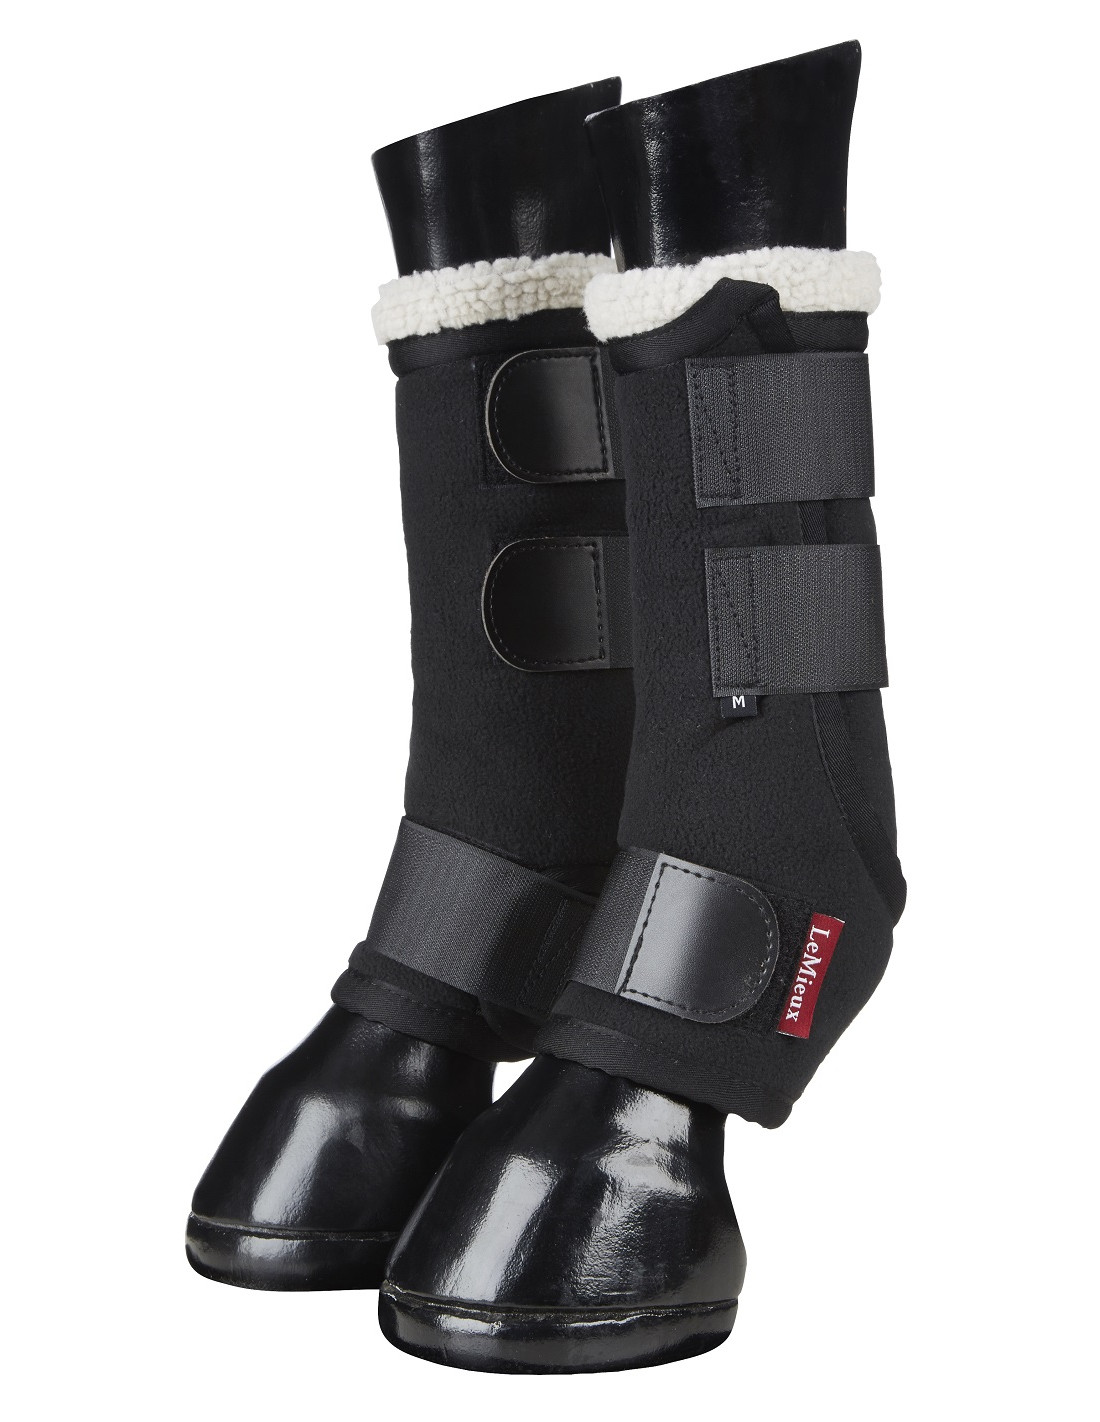 LeMieux Four Seasons Leg Wraps Size Boot XL Colour Boots Black